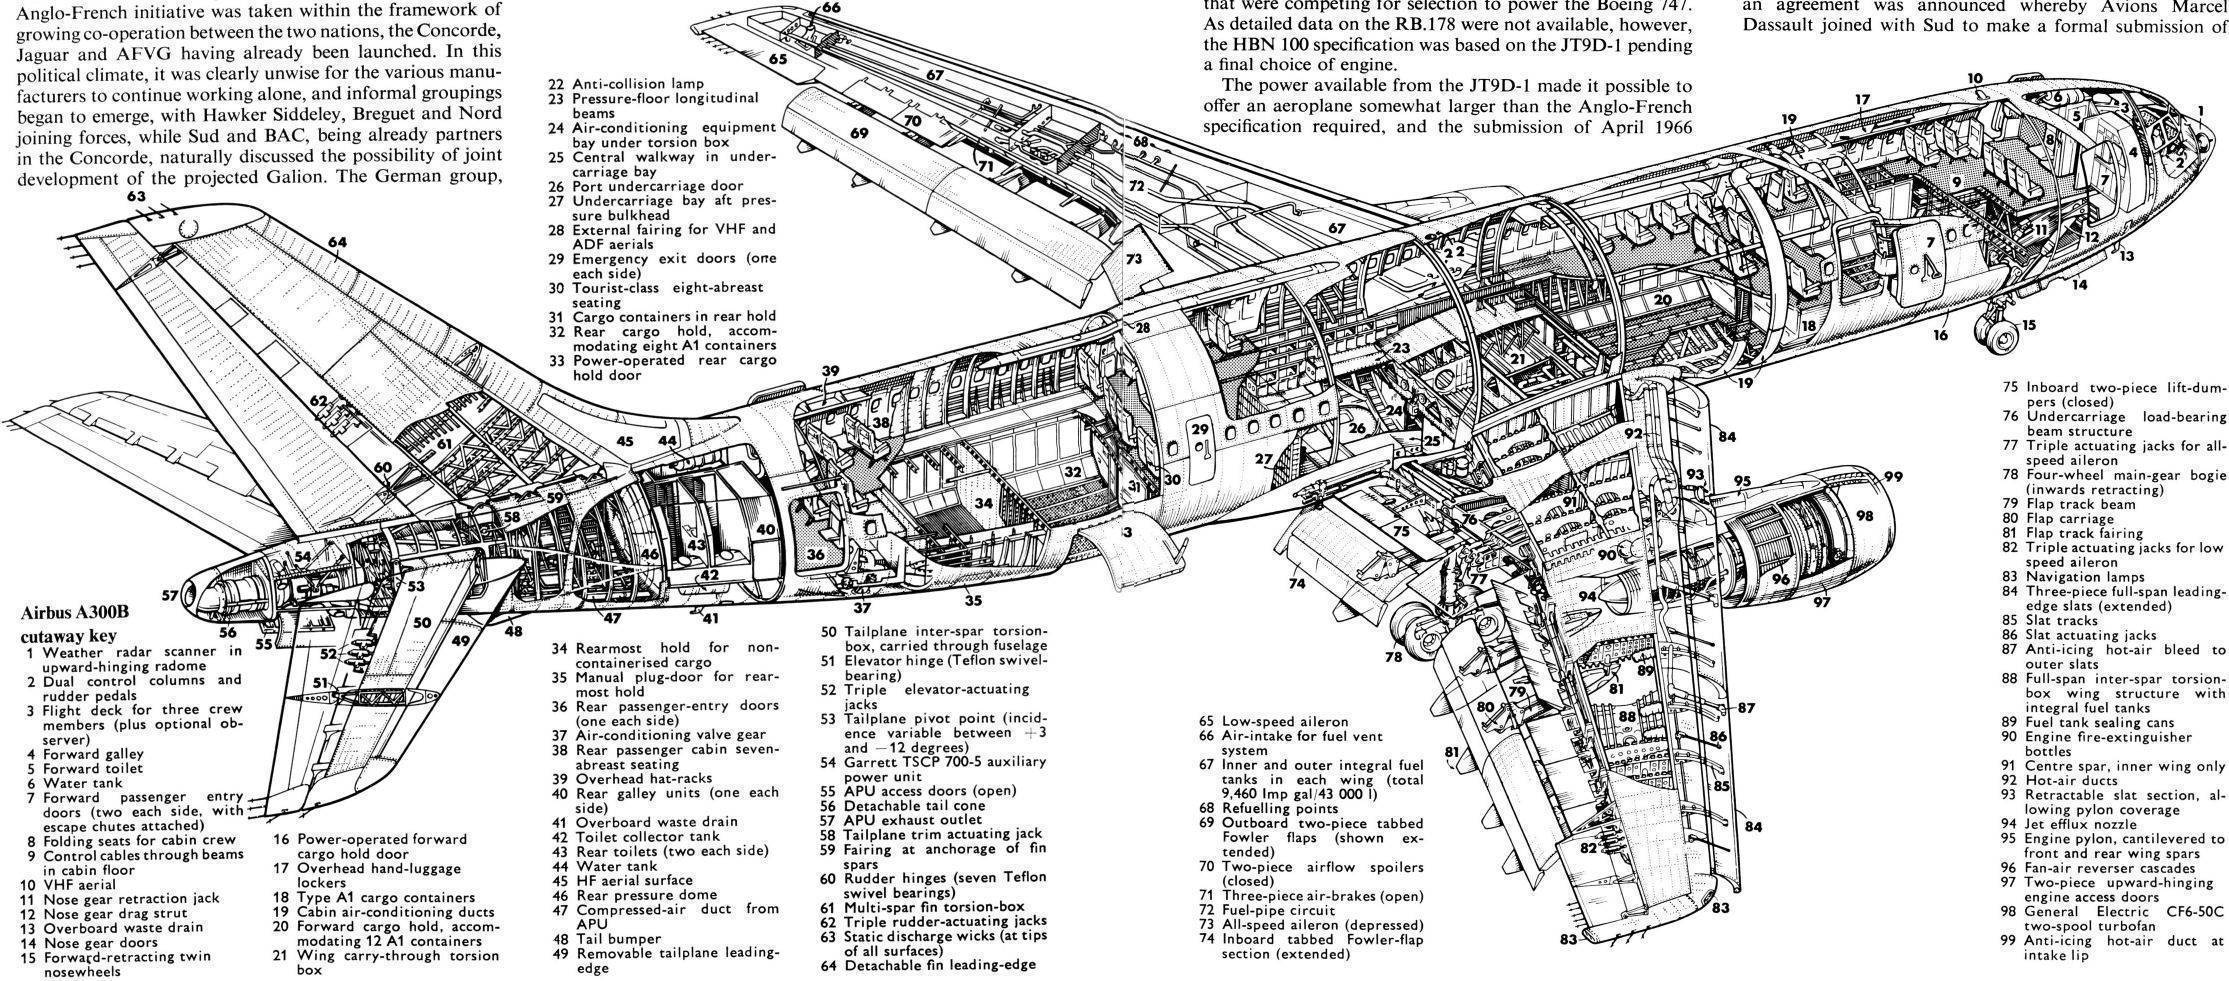 Boeing 767-200 - среднемагистральный пассажирский самолет от боинг. характеристики. история создания.